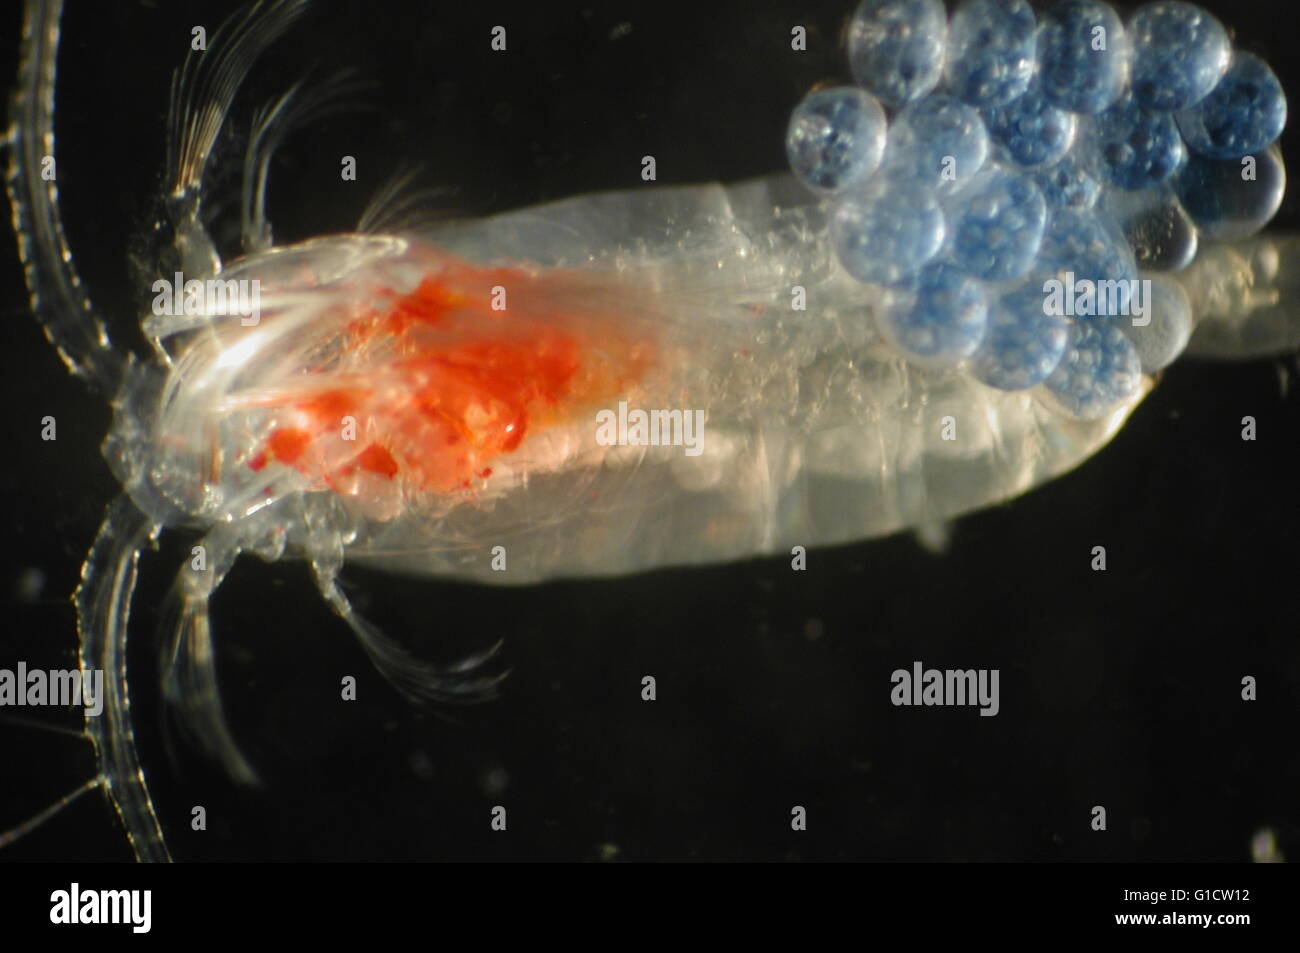 Schalenlose Eier (Zooplankton). Stockfoto